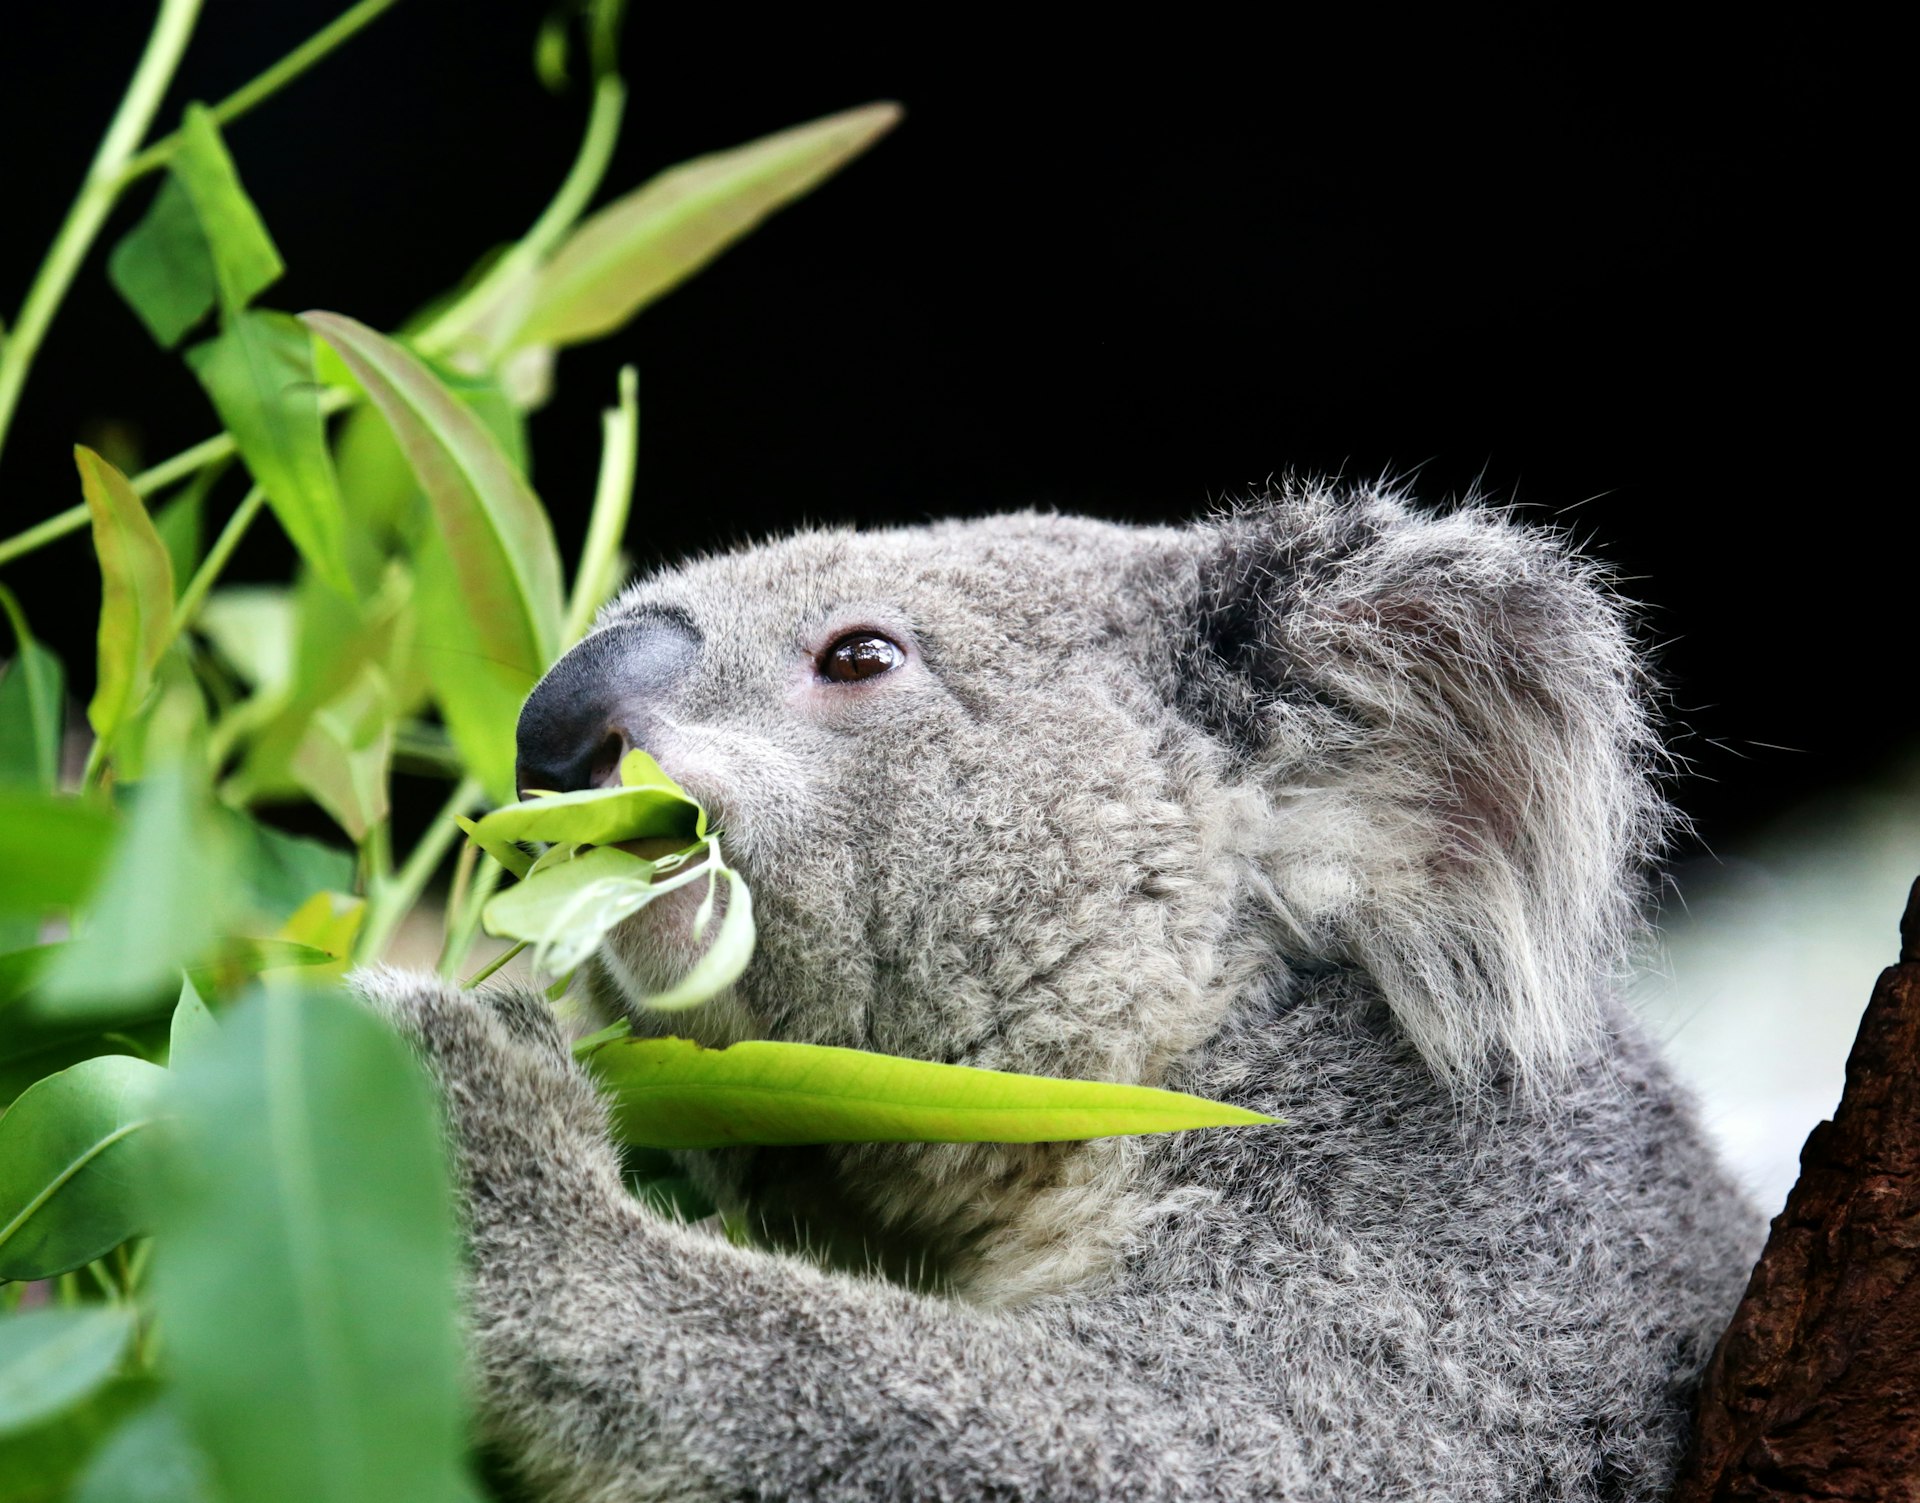 Koala eating eucalyptus leaves at Lone Pine Koala Sanctuary.